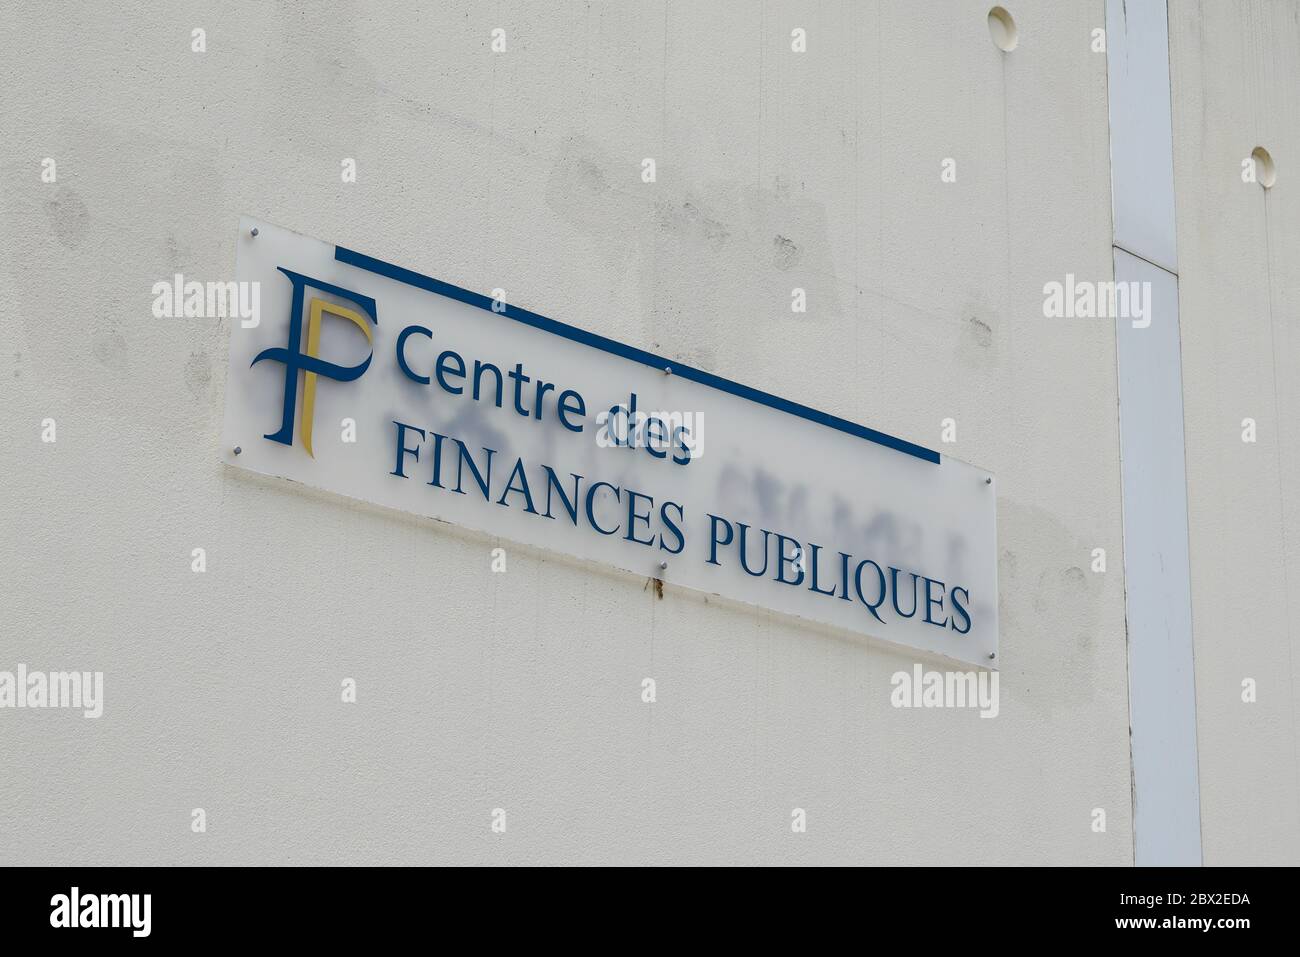 Bordeaux , Aquitaine / France - 06 01 2020 : centre des finances publiques logo sign of french taxes office building Stock Photo